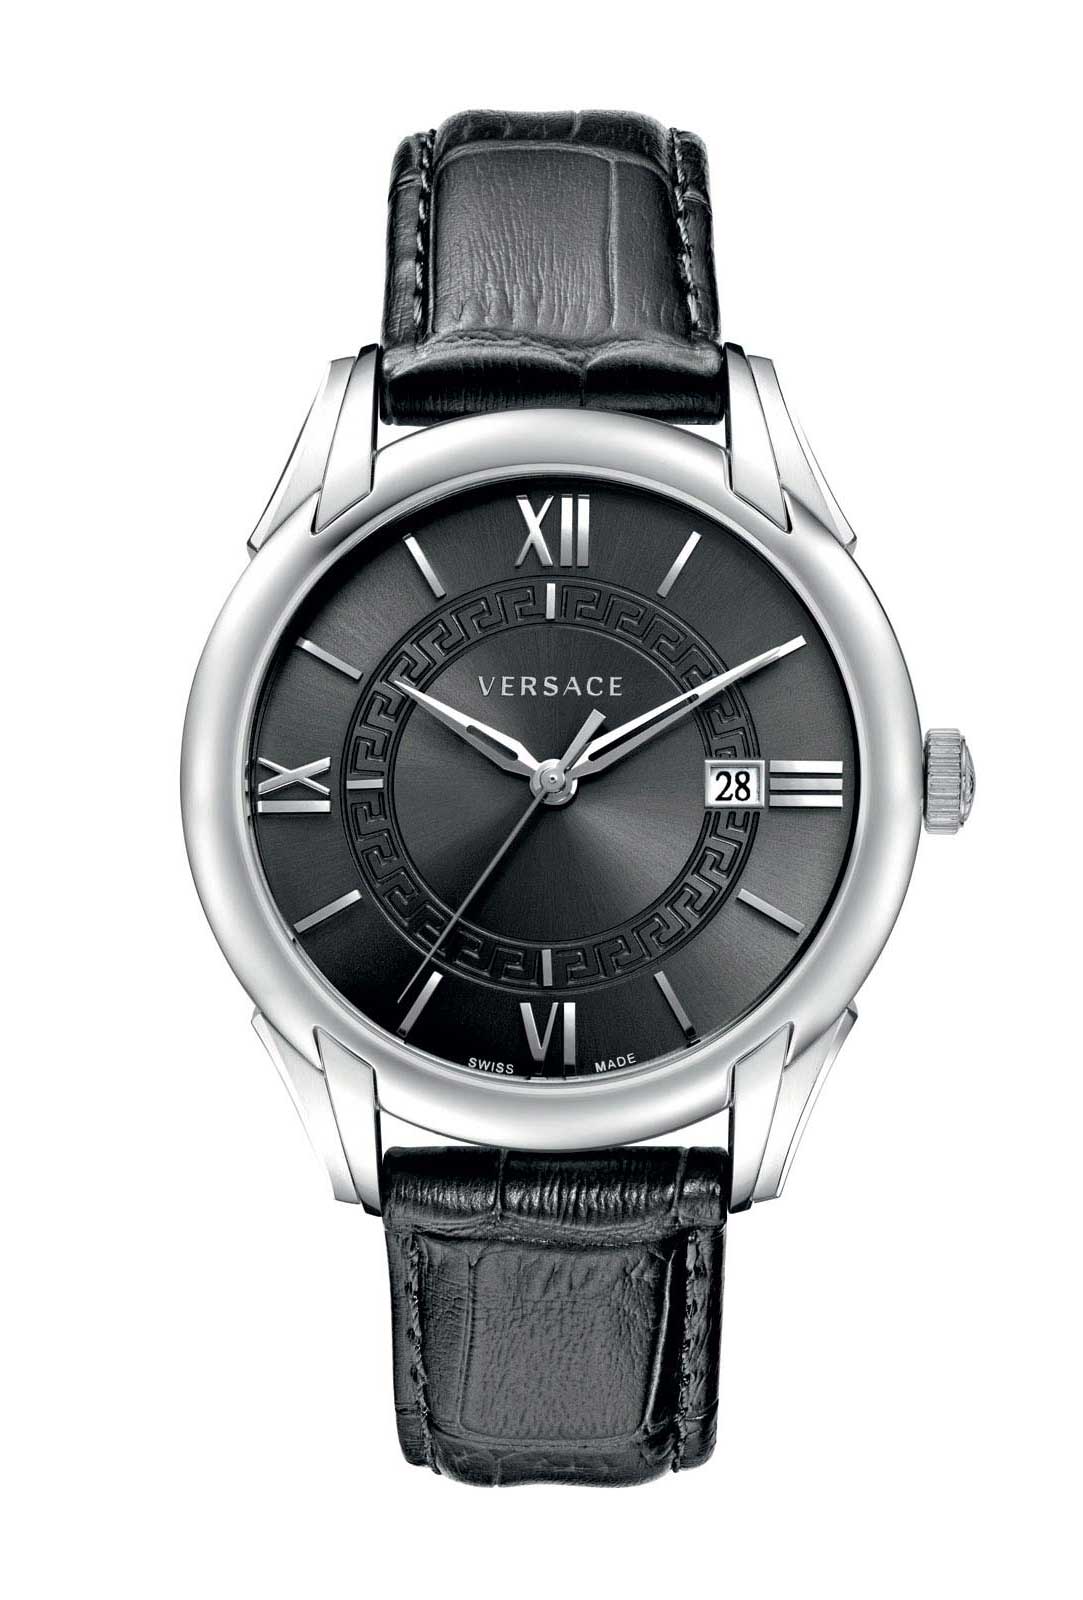 Versace QUARTZ 3 HANDS watch 715.2 STEEL BLACK